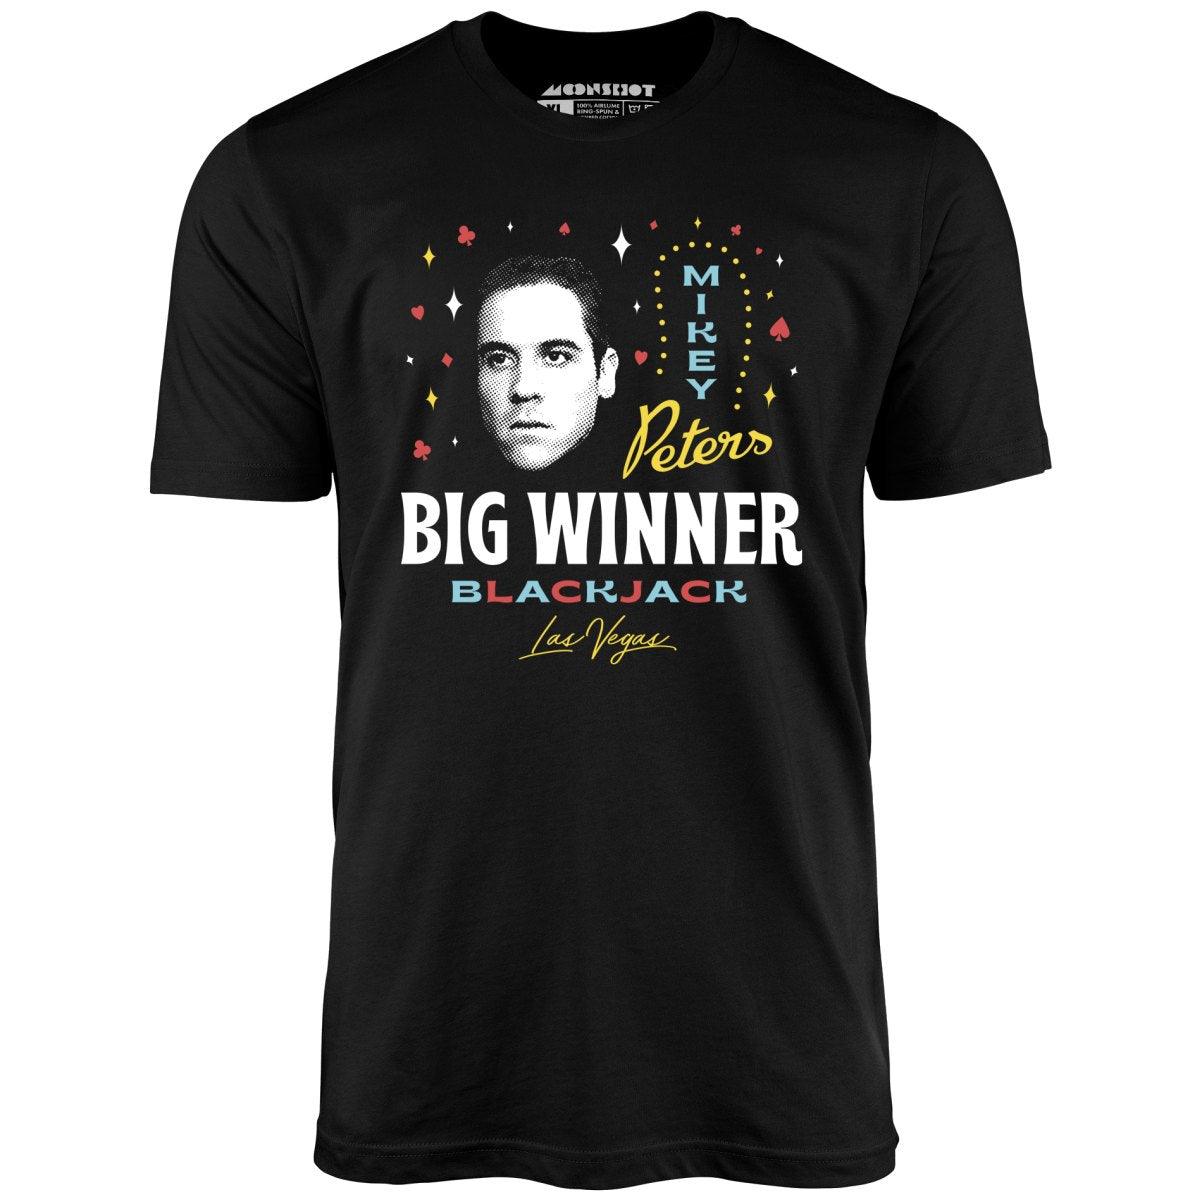 Swingers - Big Winner at the Casino - Unisex T-Shirt